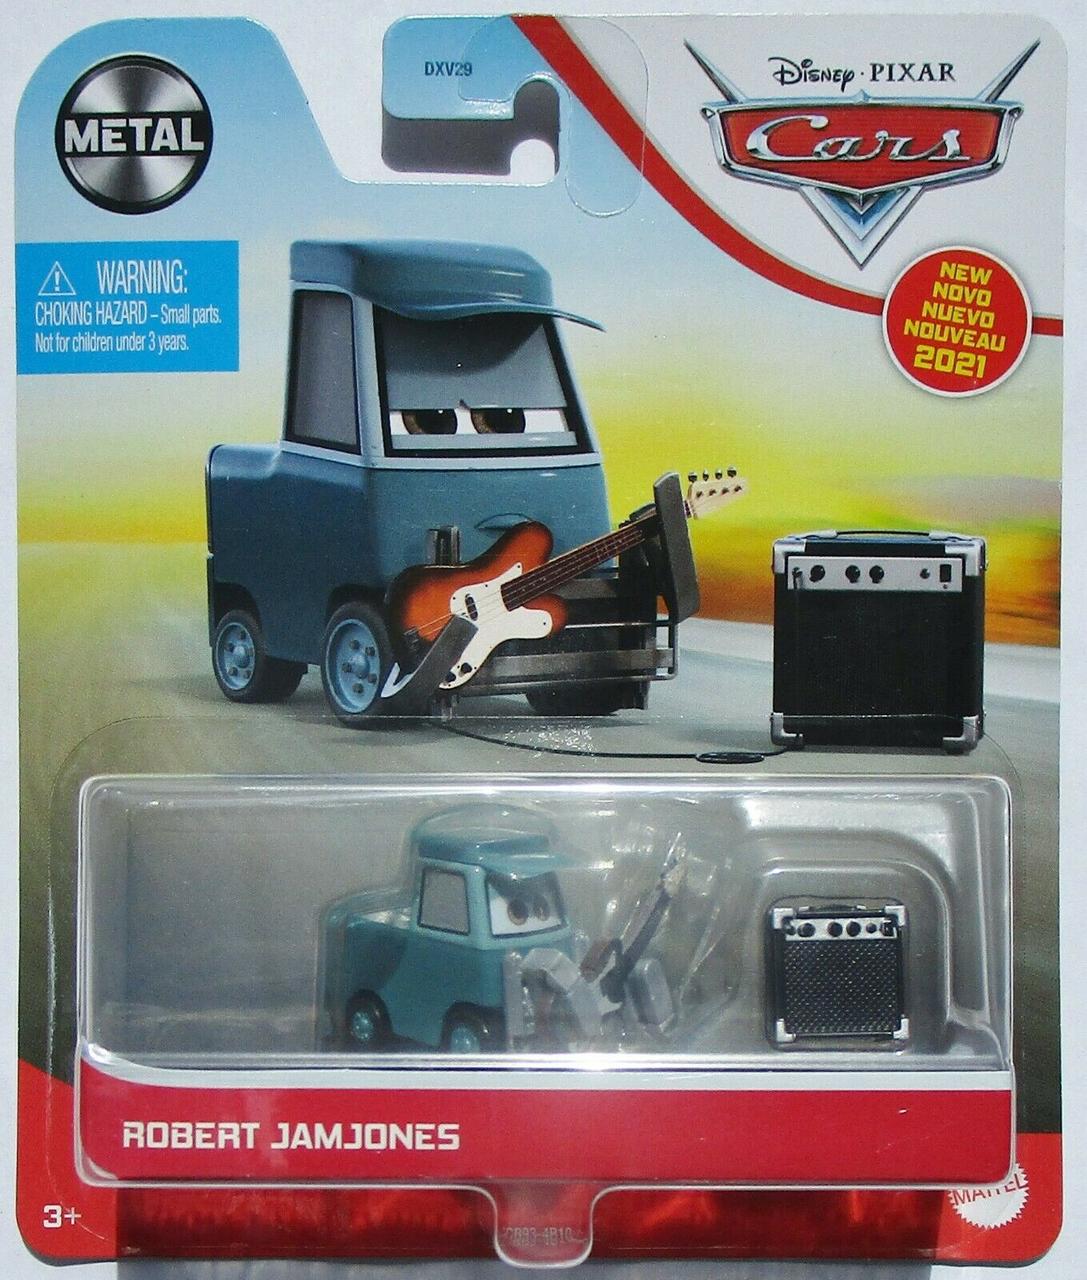 Тачки: Роберт Джемджонс (Disney and Pixar Cars Robert Jamjones) від Mattel